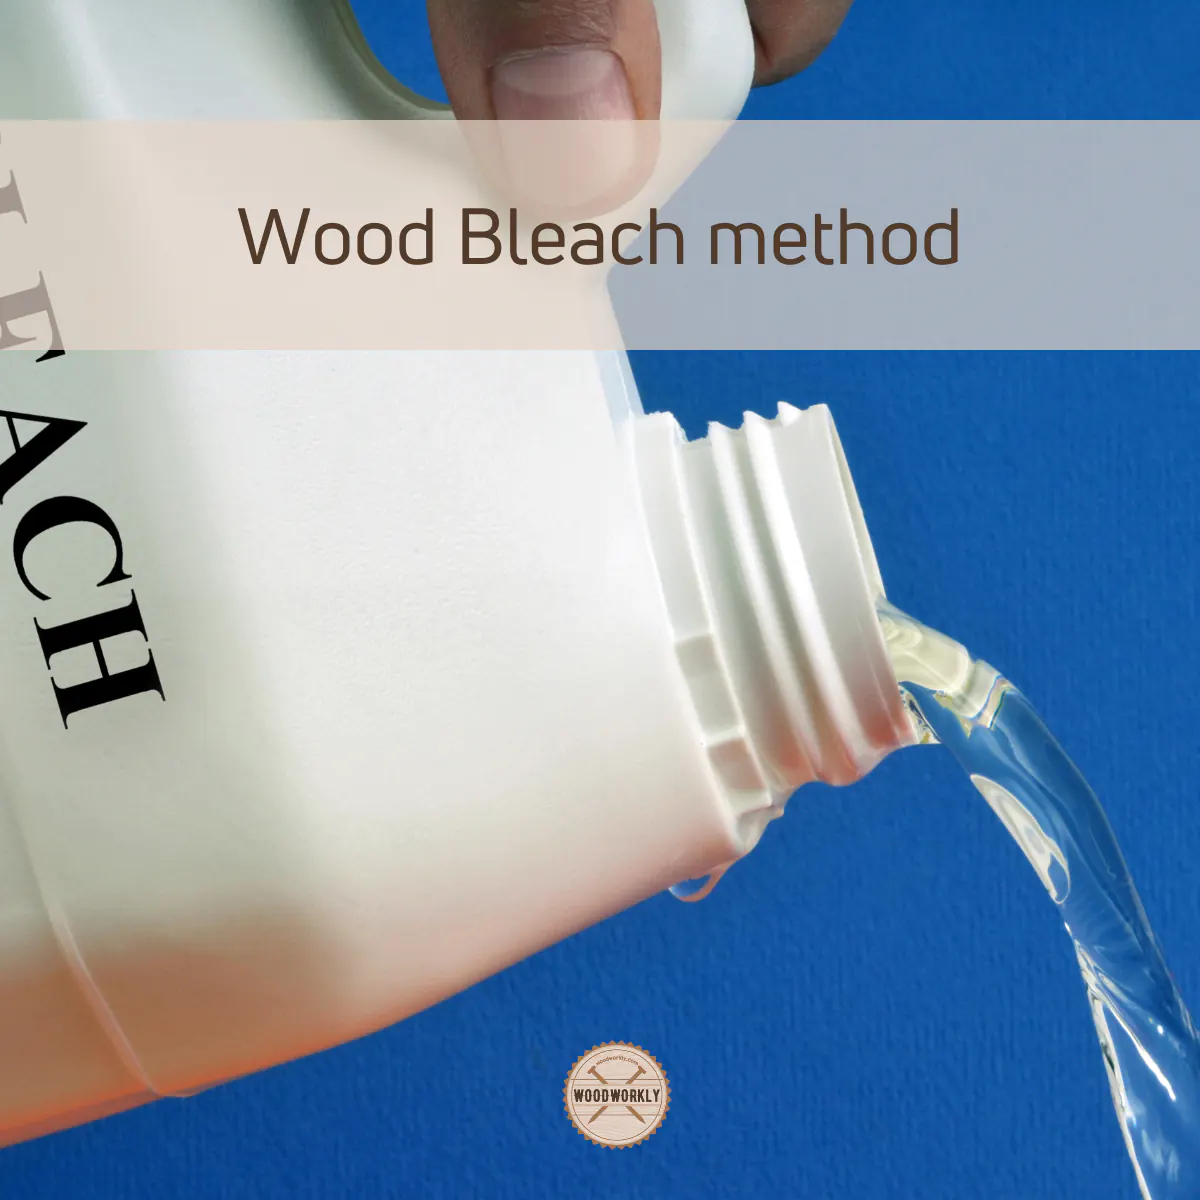 Wood Bleach method